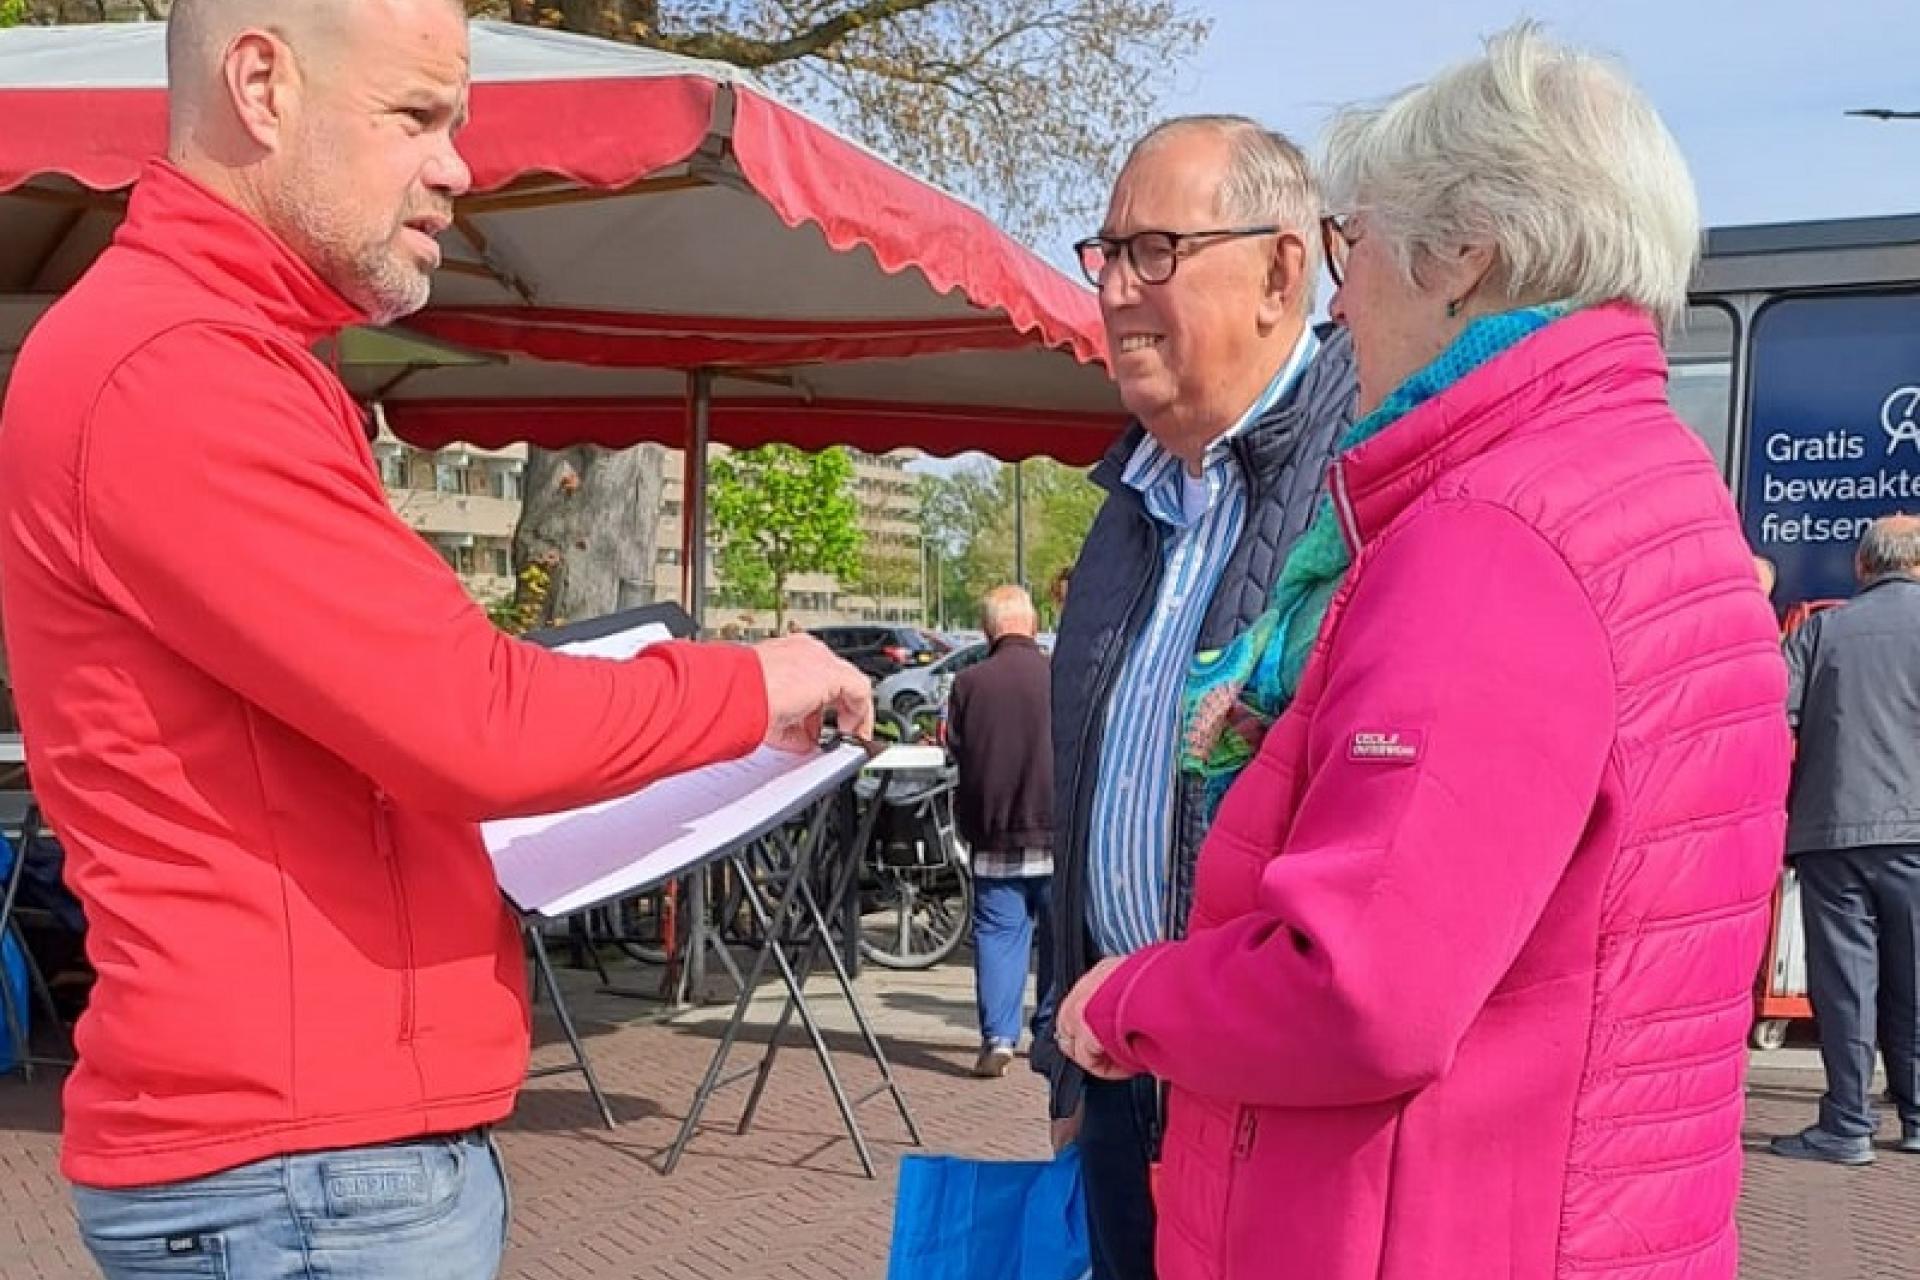 Wethouder Niels van den Berg in gesprek met 2 inwoners op de markt in Enschede Zuid